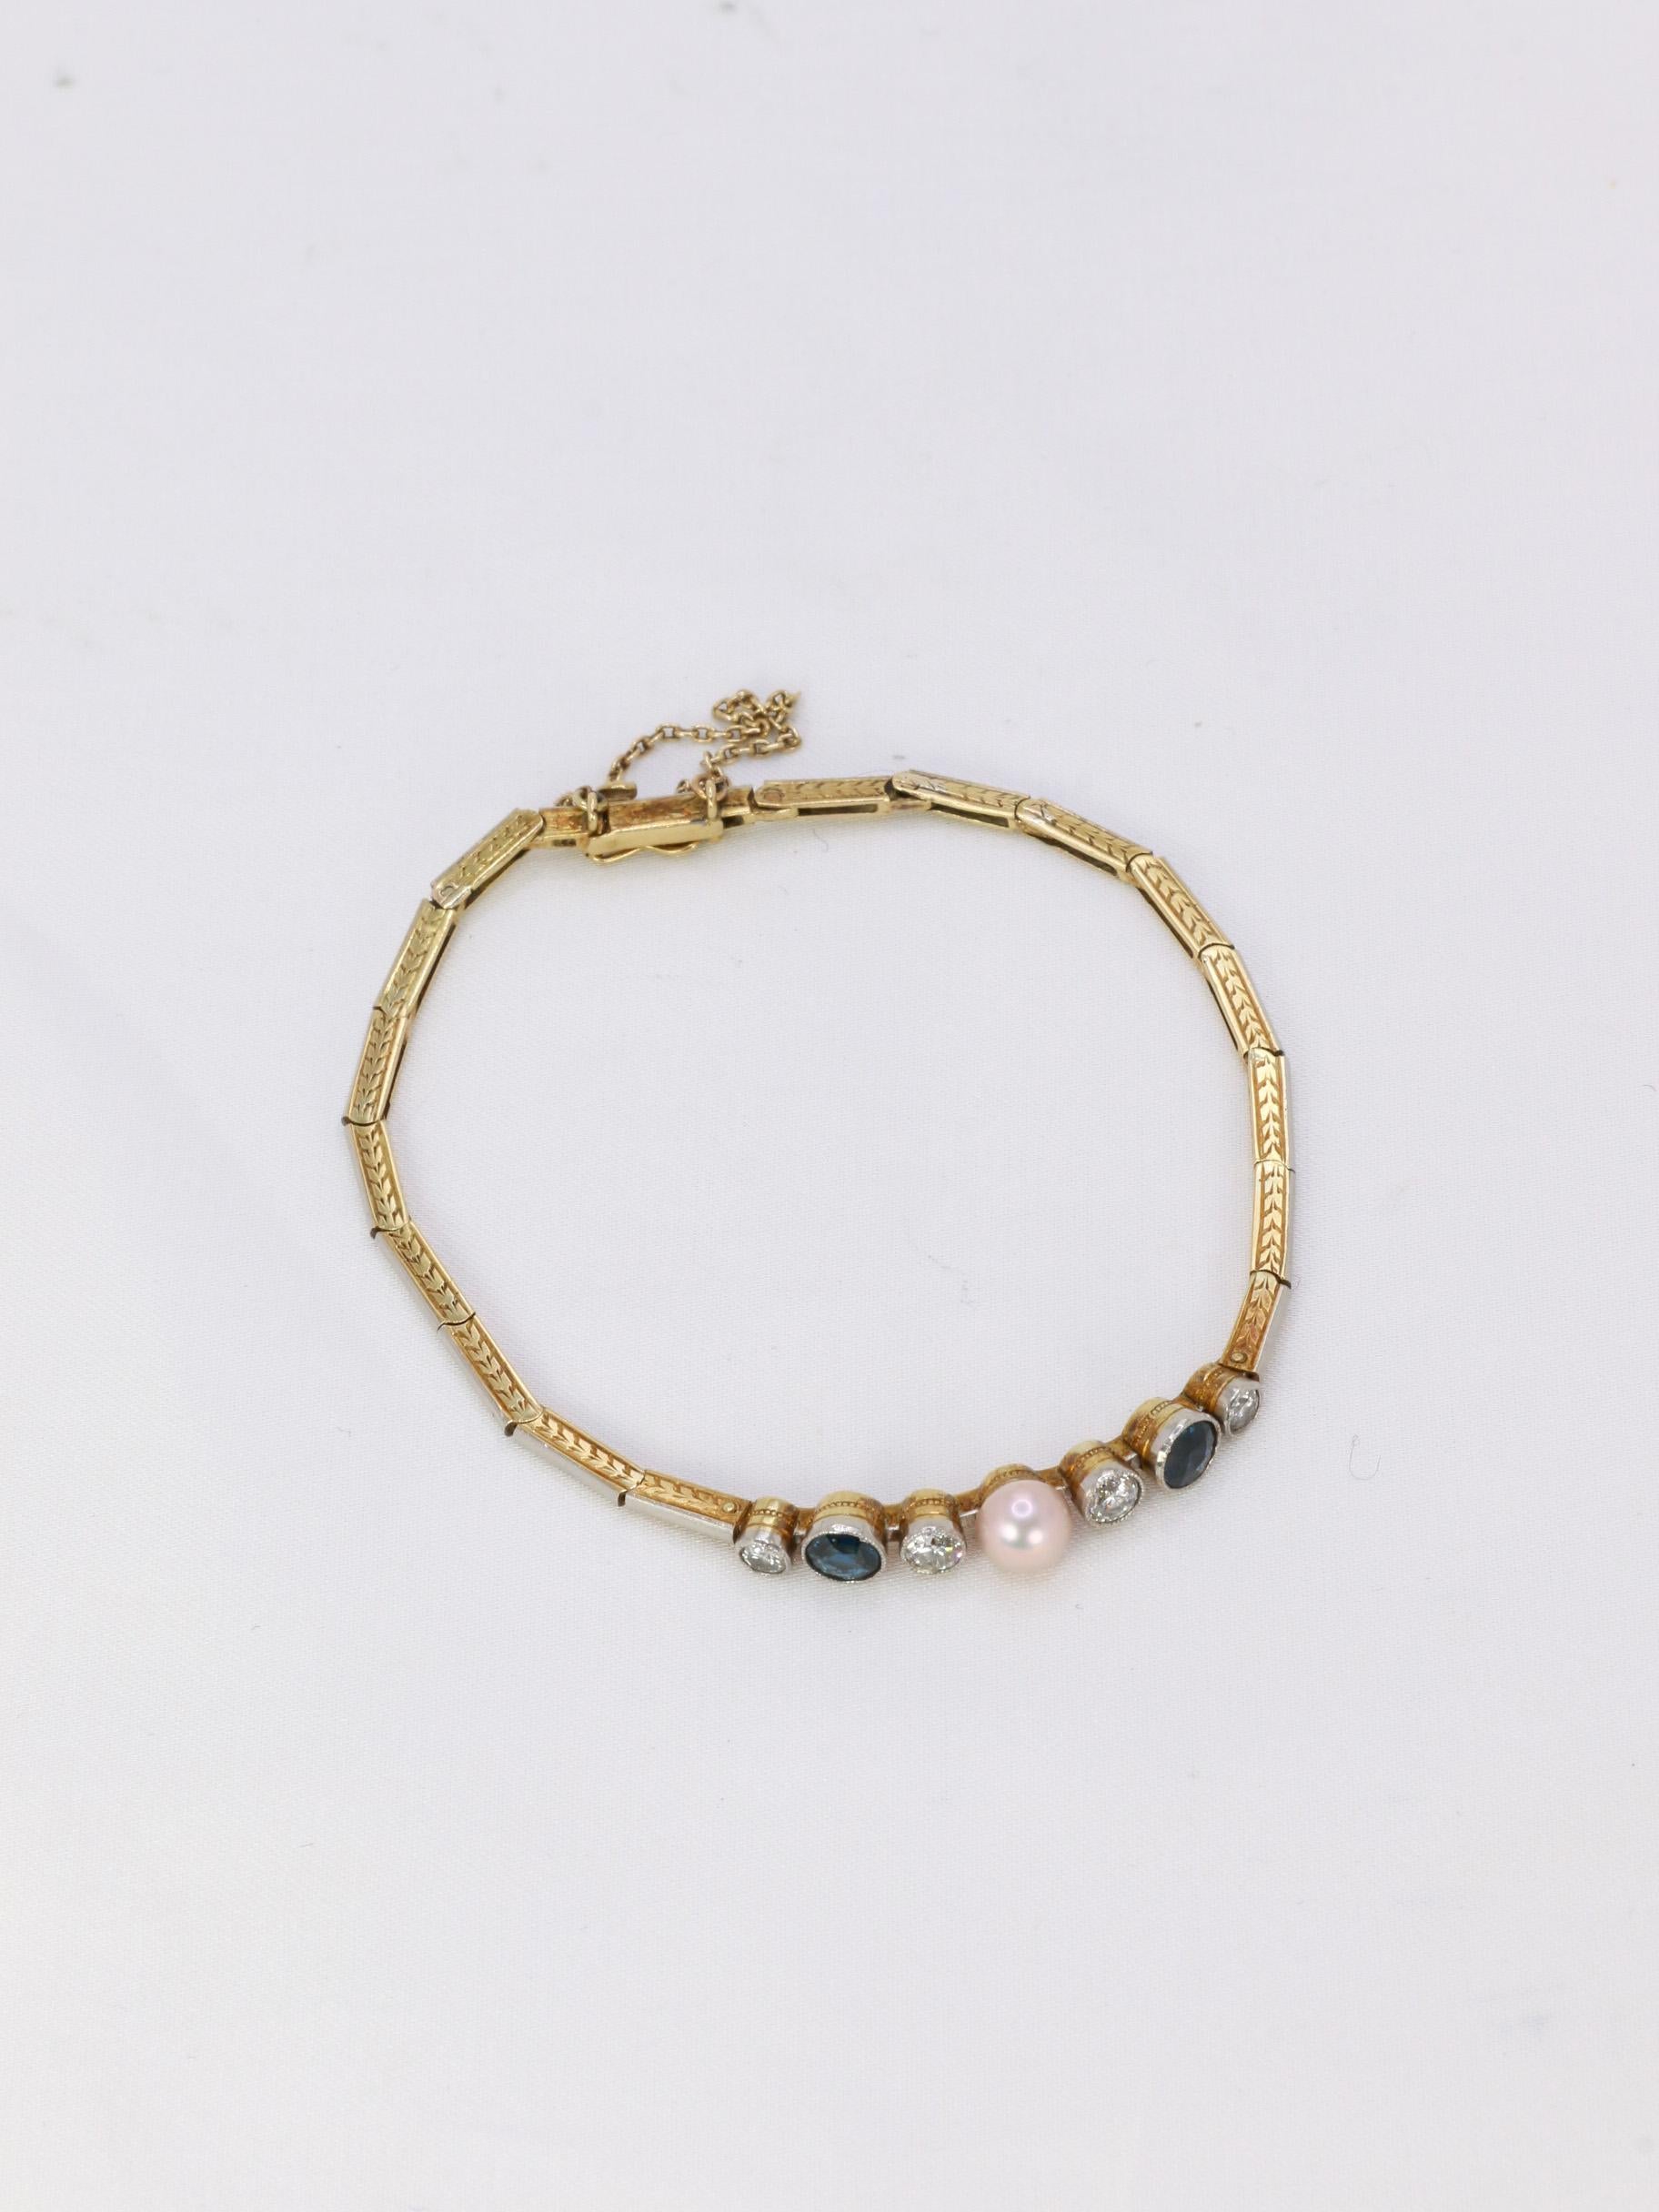 Old Mine Cut Bracelet Belle Epoque en or, perle fine bouton rosée, diamants taille ancienne e